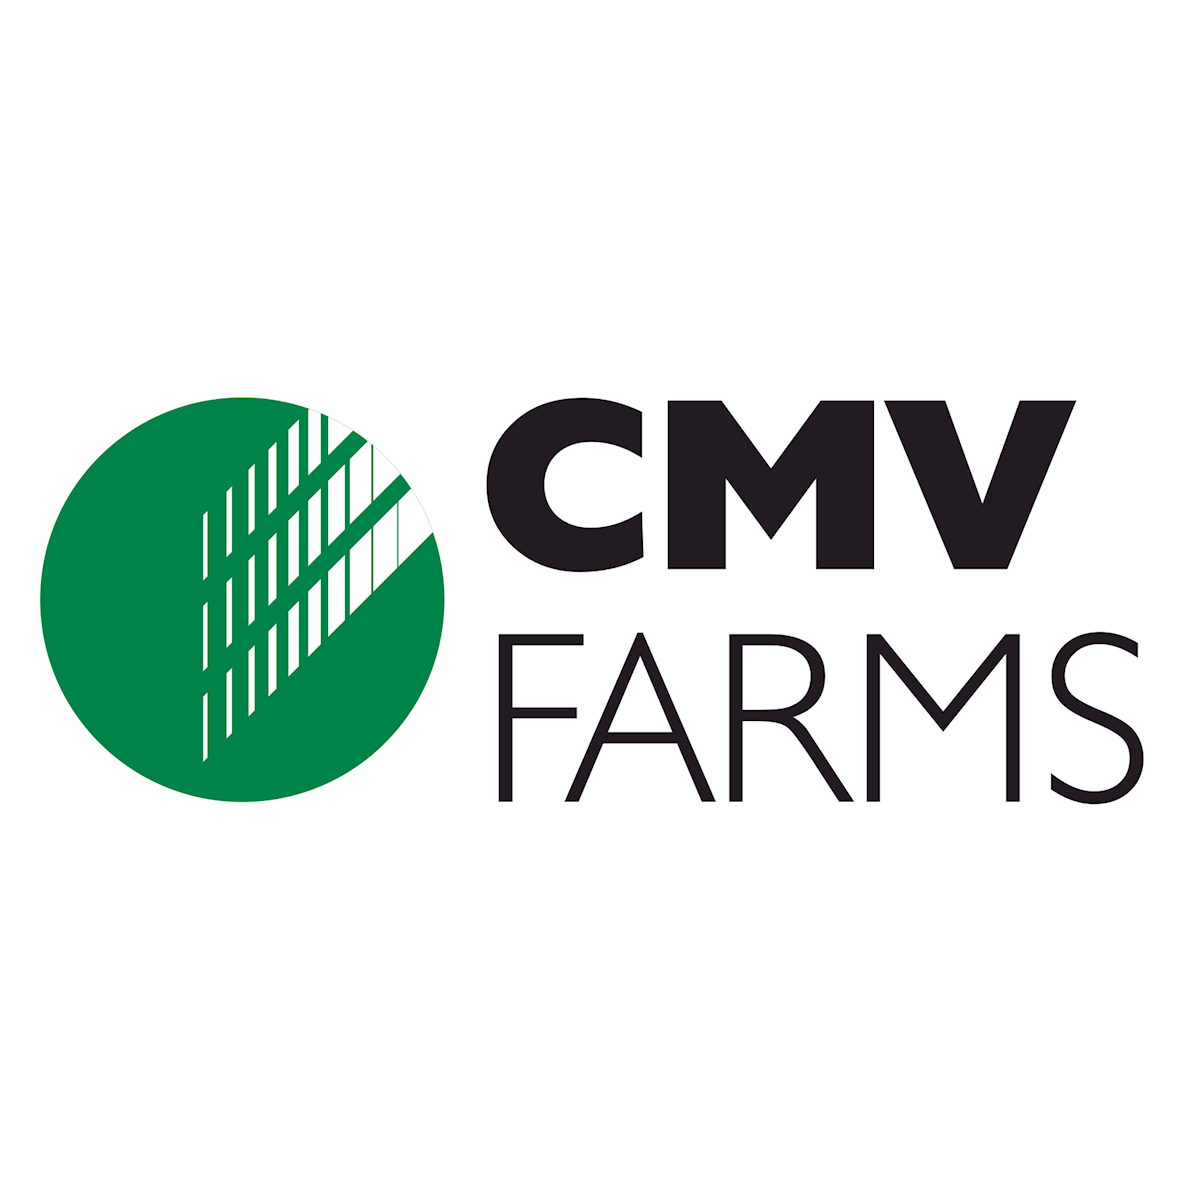 CMV Farms